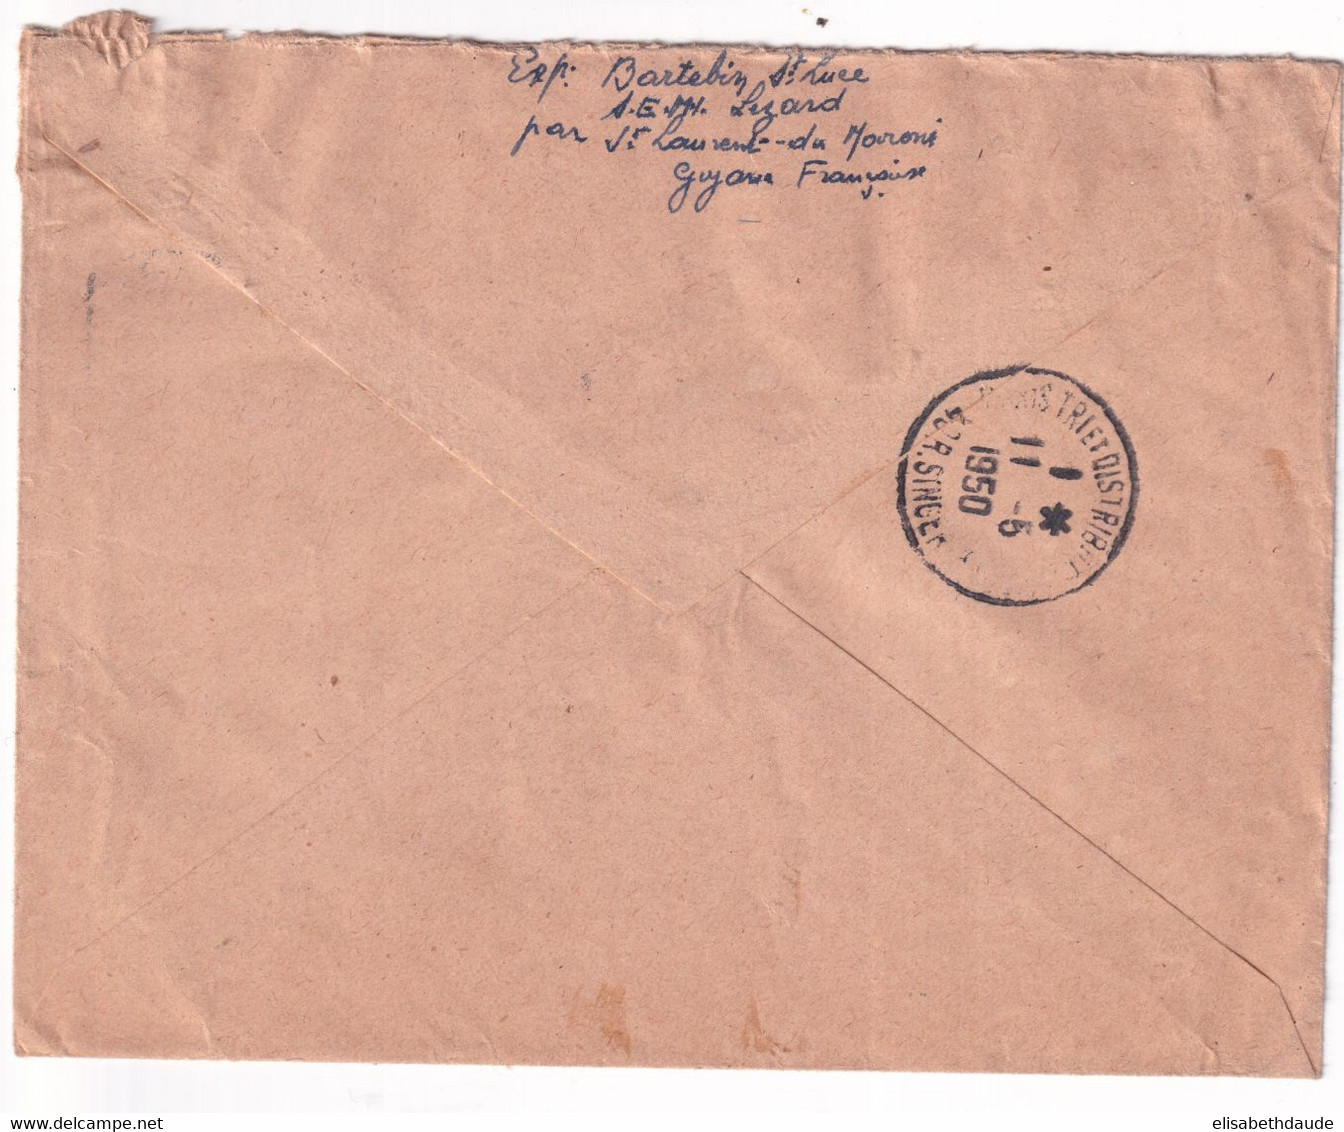 GUYANE - 1950 - EMISSION DE LONDRES POSTE AERIENNE SEUL Sur ENVELOPPE RECOMMANDEE AVION De MANA (RARE) ! => PARIS - Covers & Documents